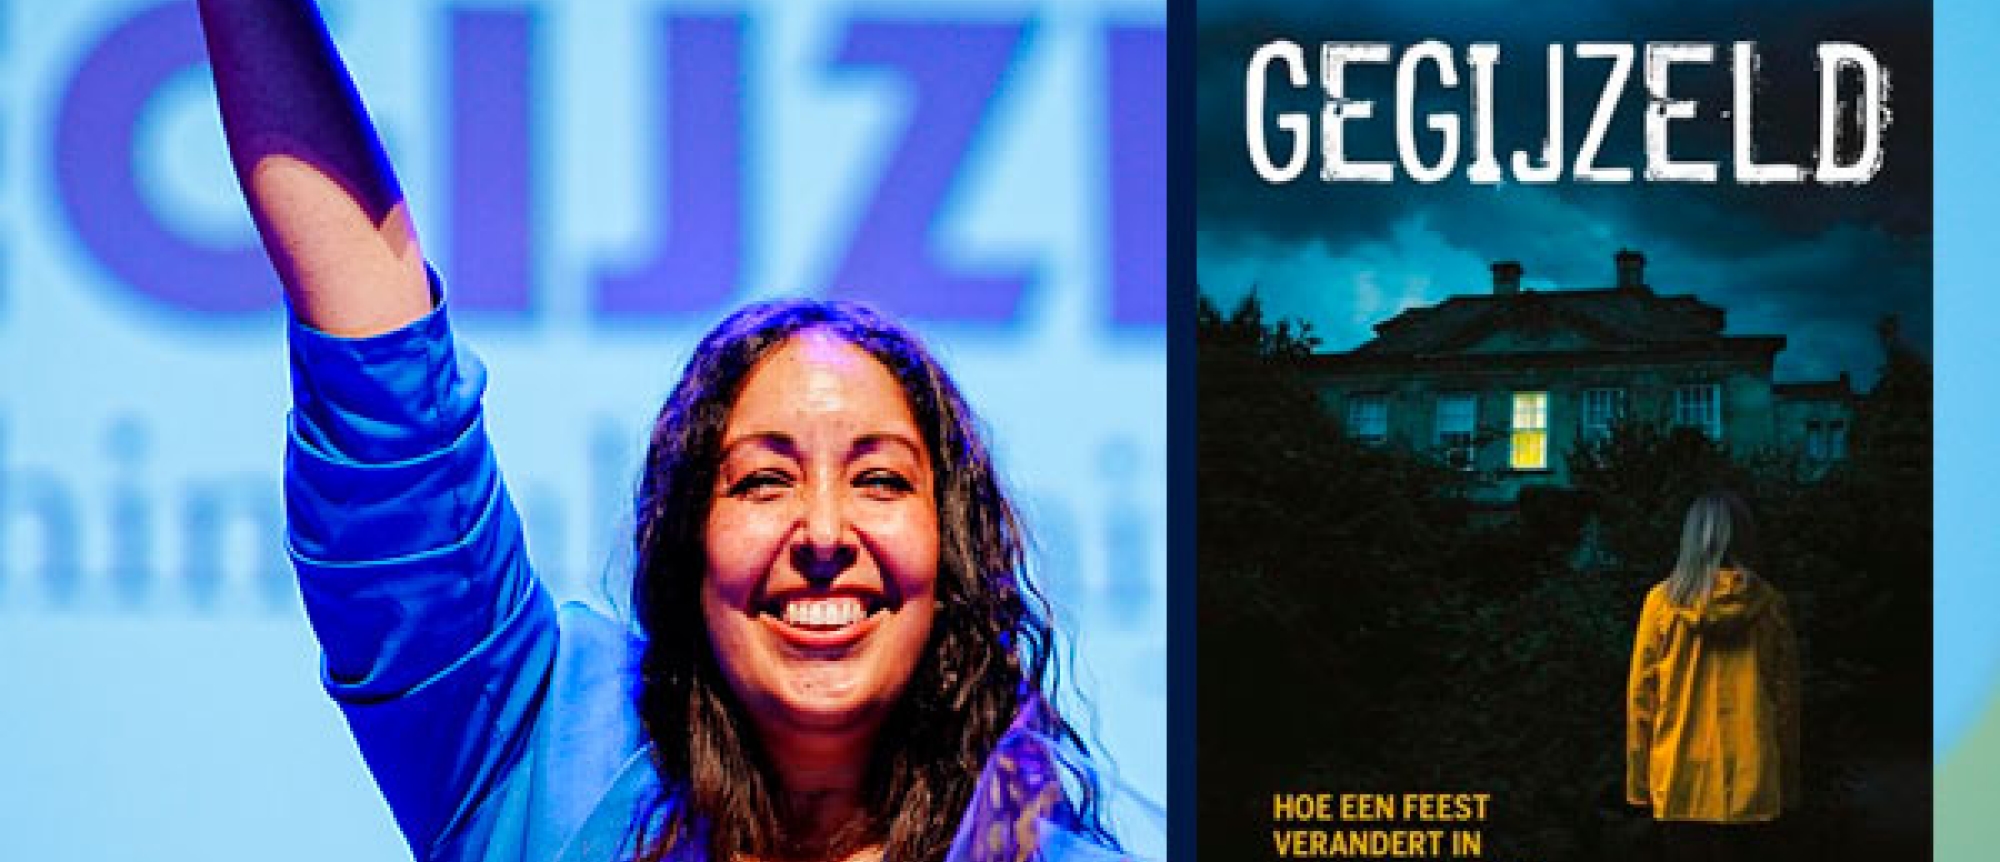 Winnaar Prijs van de Jonge Jury 2022 is Chinouk Thijssen met 'Gegijzeld'.